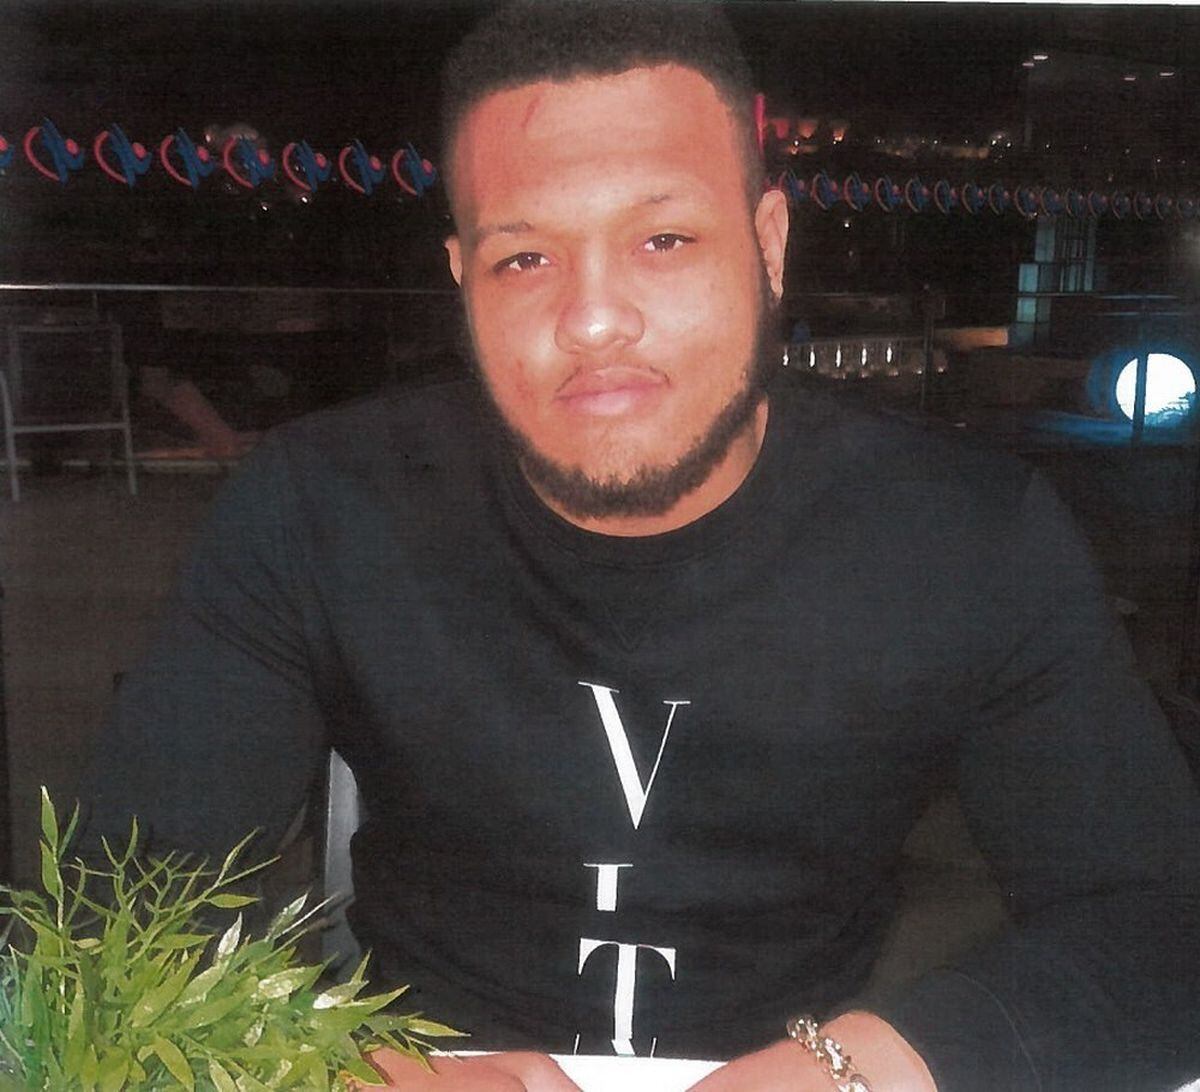 Tyrone Dorsett from Telford was shot dead in Birmingham